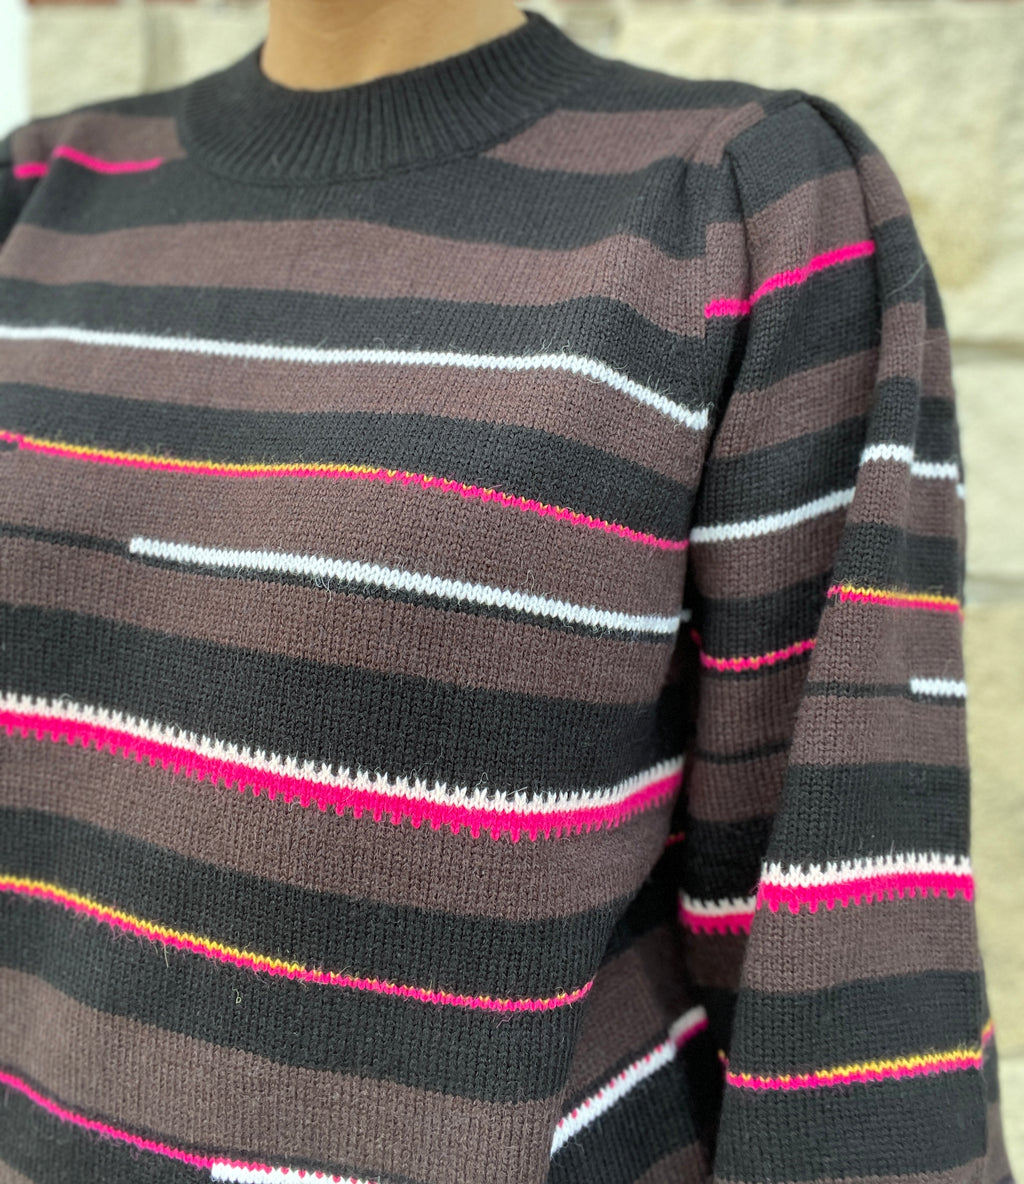 Jasmine Sweater by Dear John in Napolean